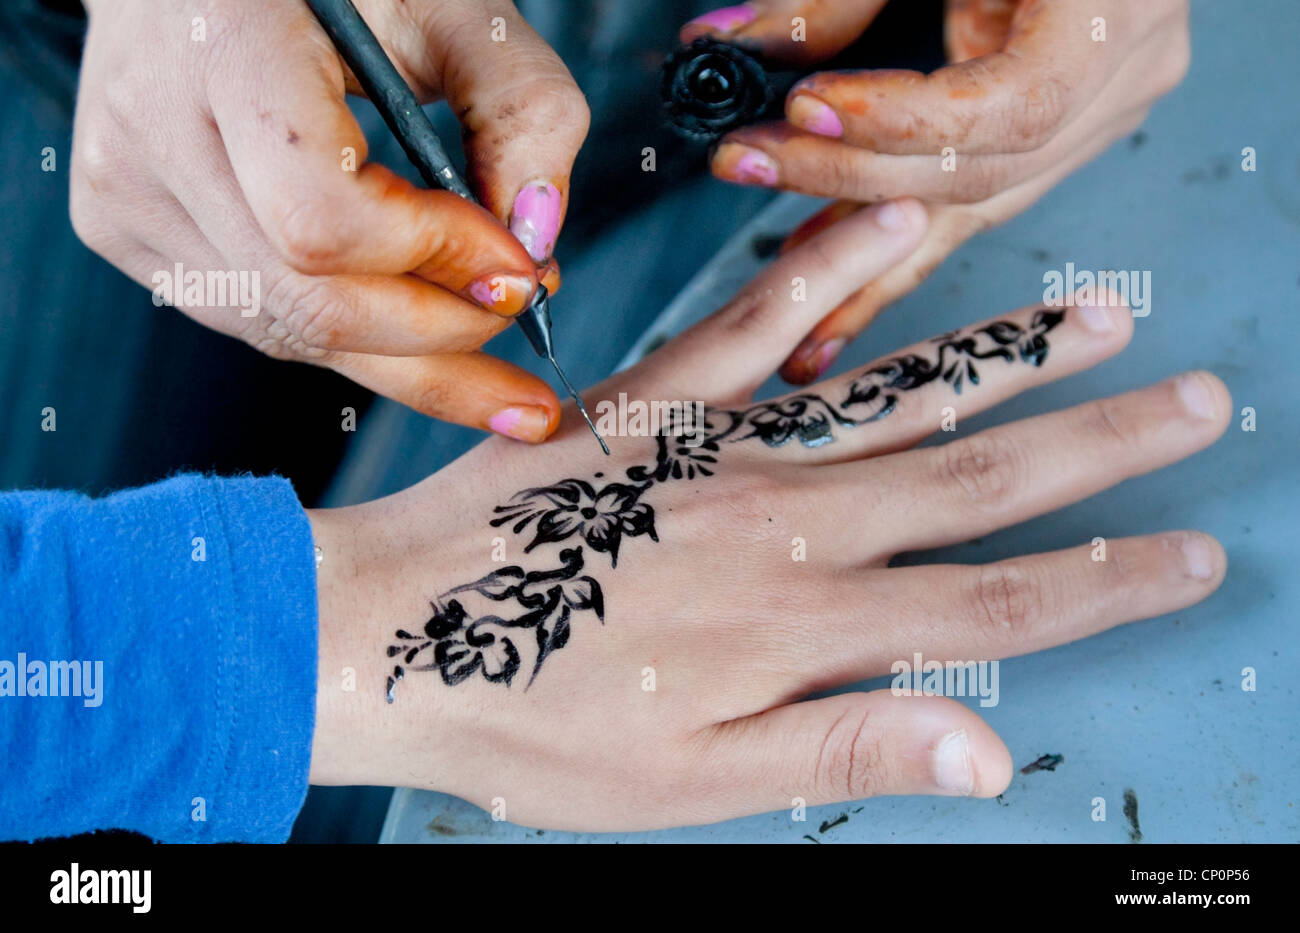 Street artist apply black henna on customer's skin. Stock Photo